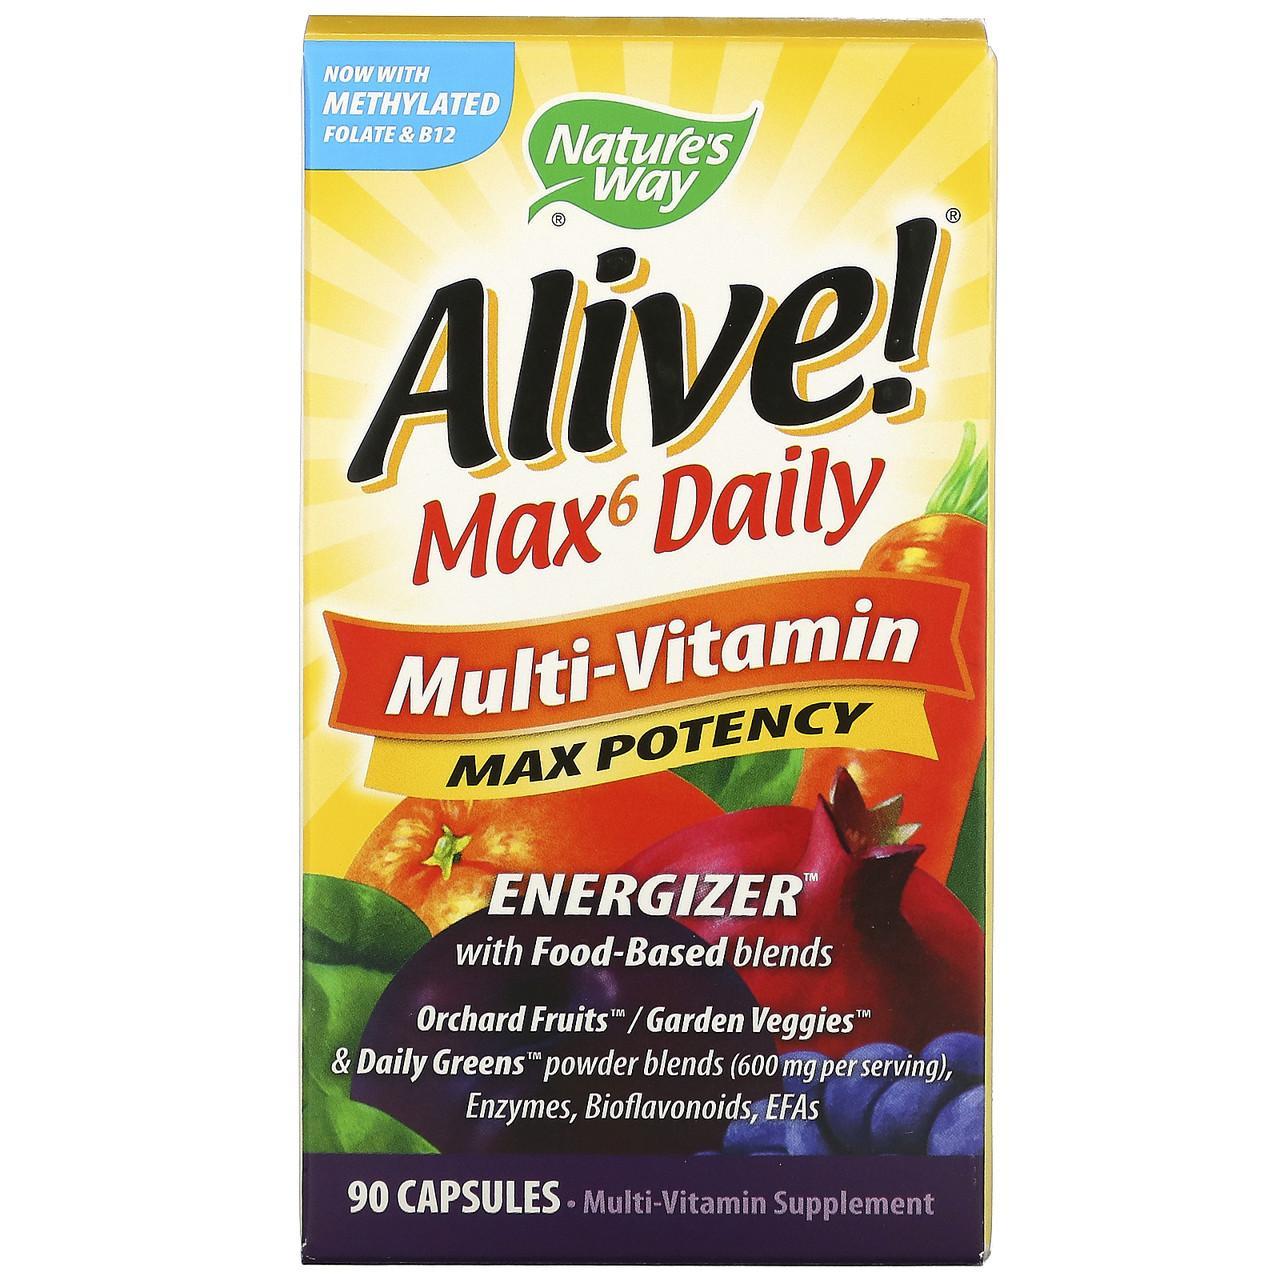 Мультивитаминный комплекс Alive! Max6 Daily, 90 растительных капсул, Nature's Way